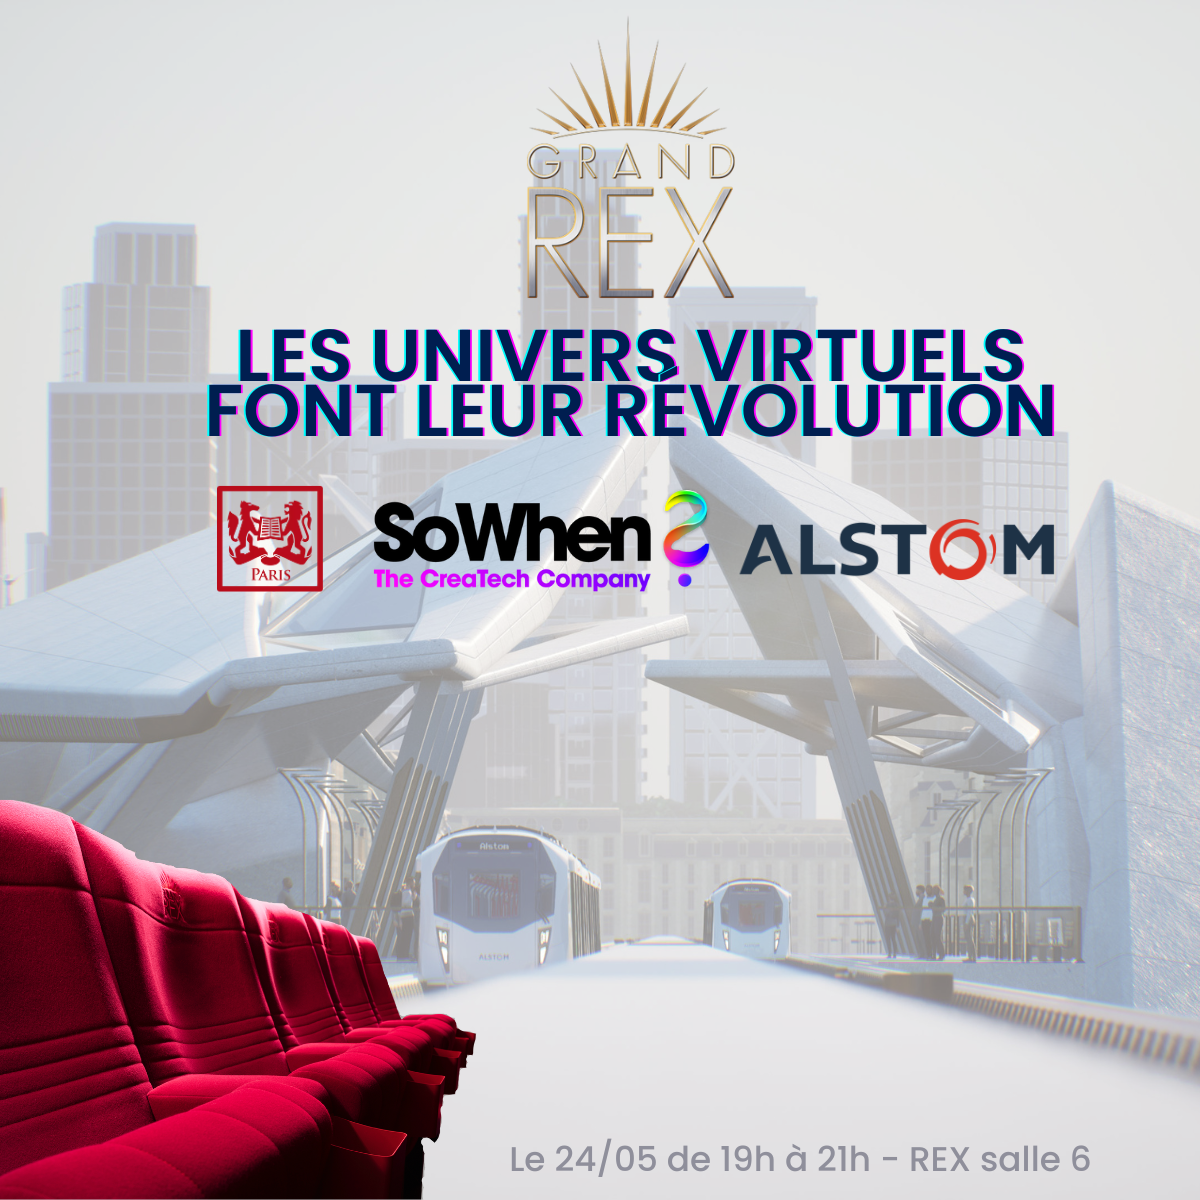 Le 24 mai aura lieu au Grand Rex un événement où les annonceurs et marques pourront retrouver Alstom et SoWhen? pour discuter autour du sujet des univers virtuels sur mesure. Evénement co organisé avec Sciences po alumni